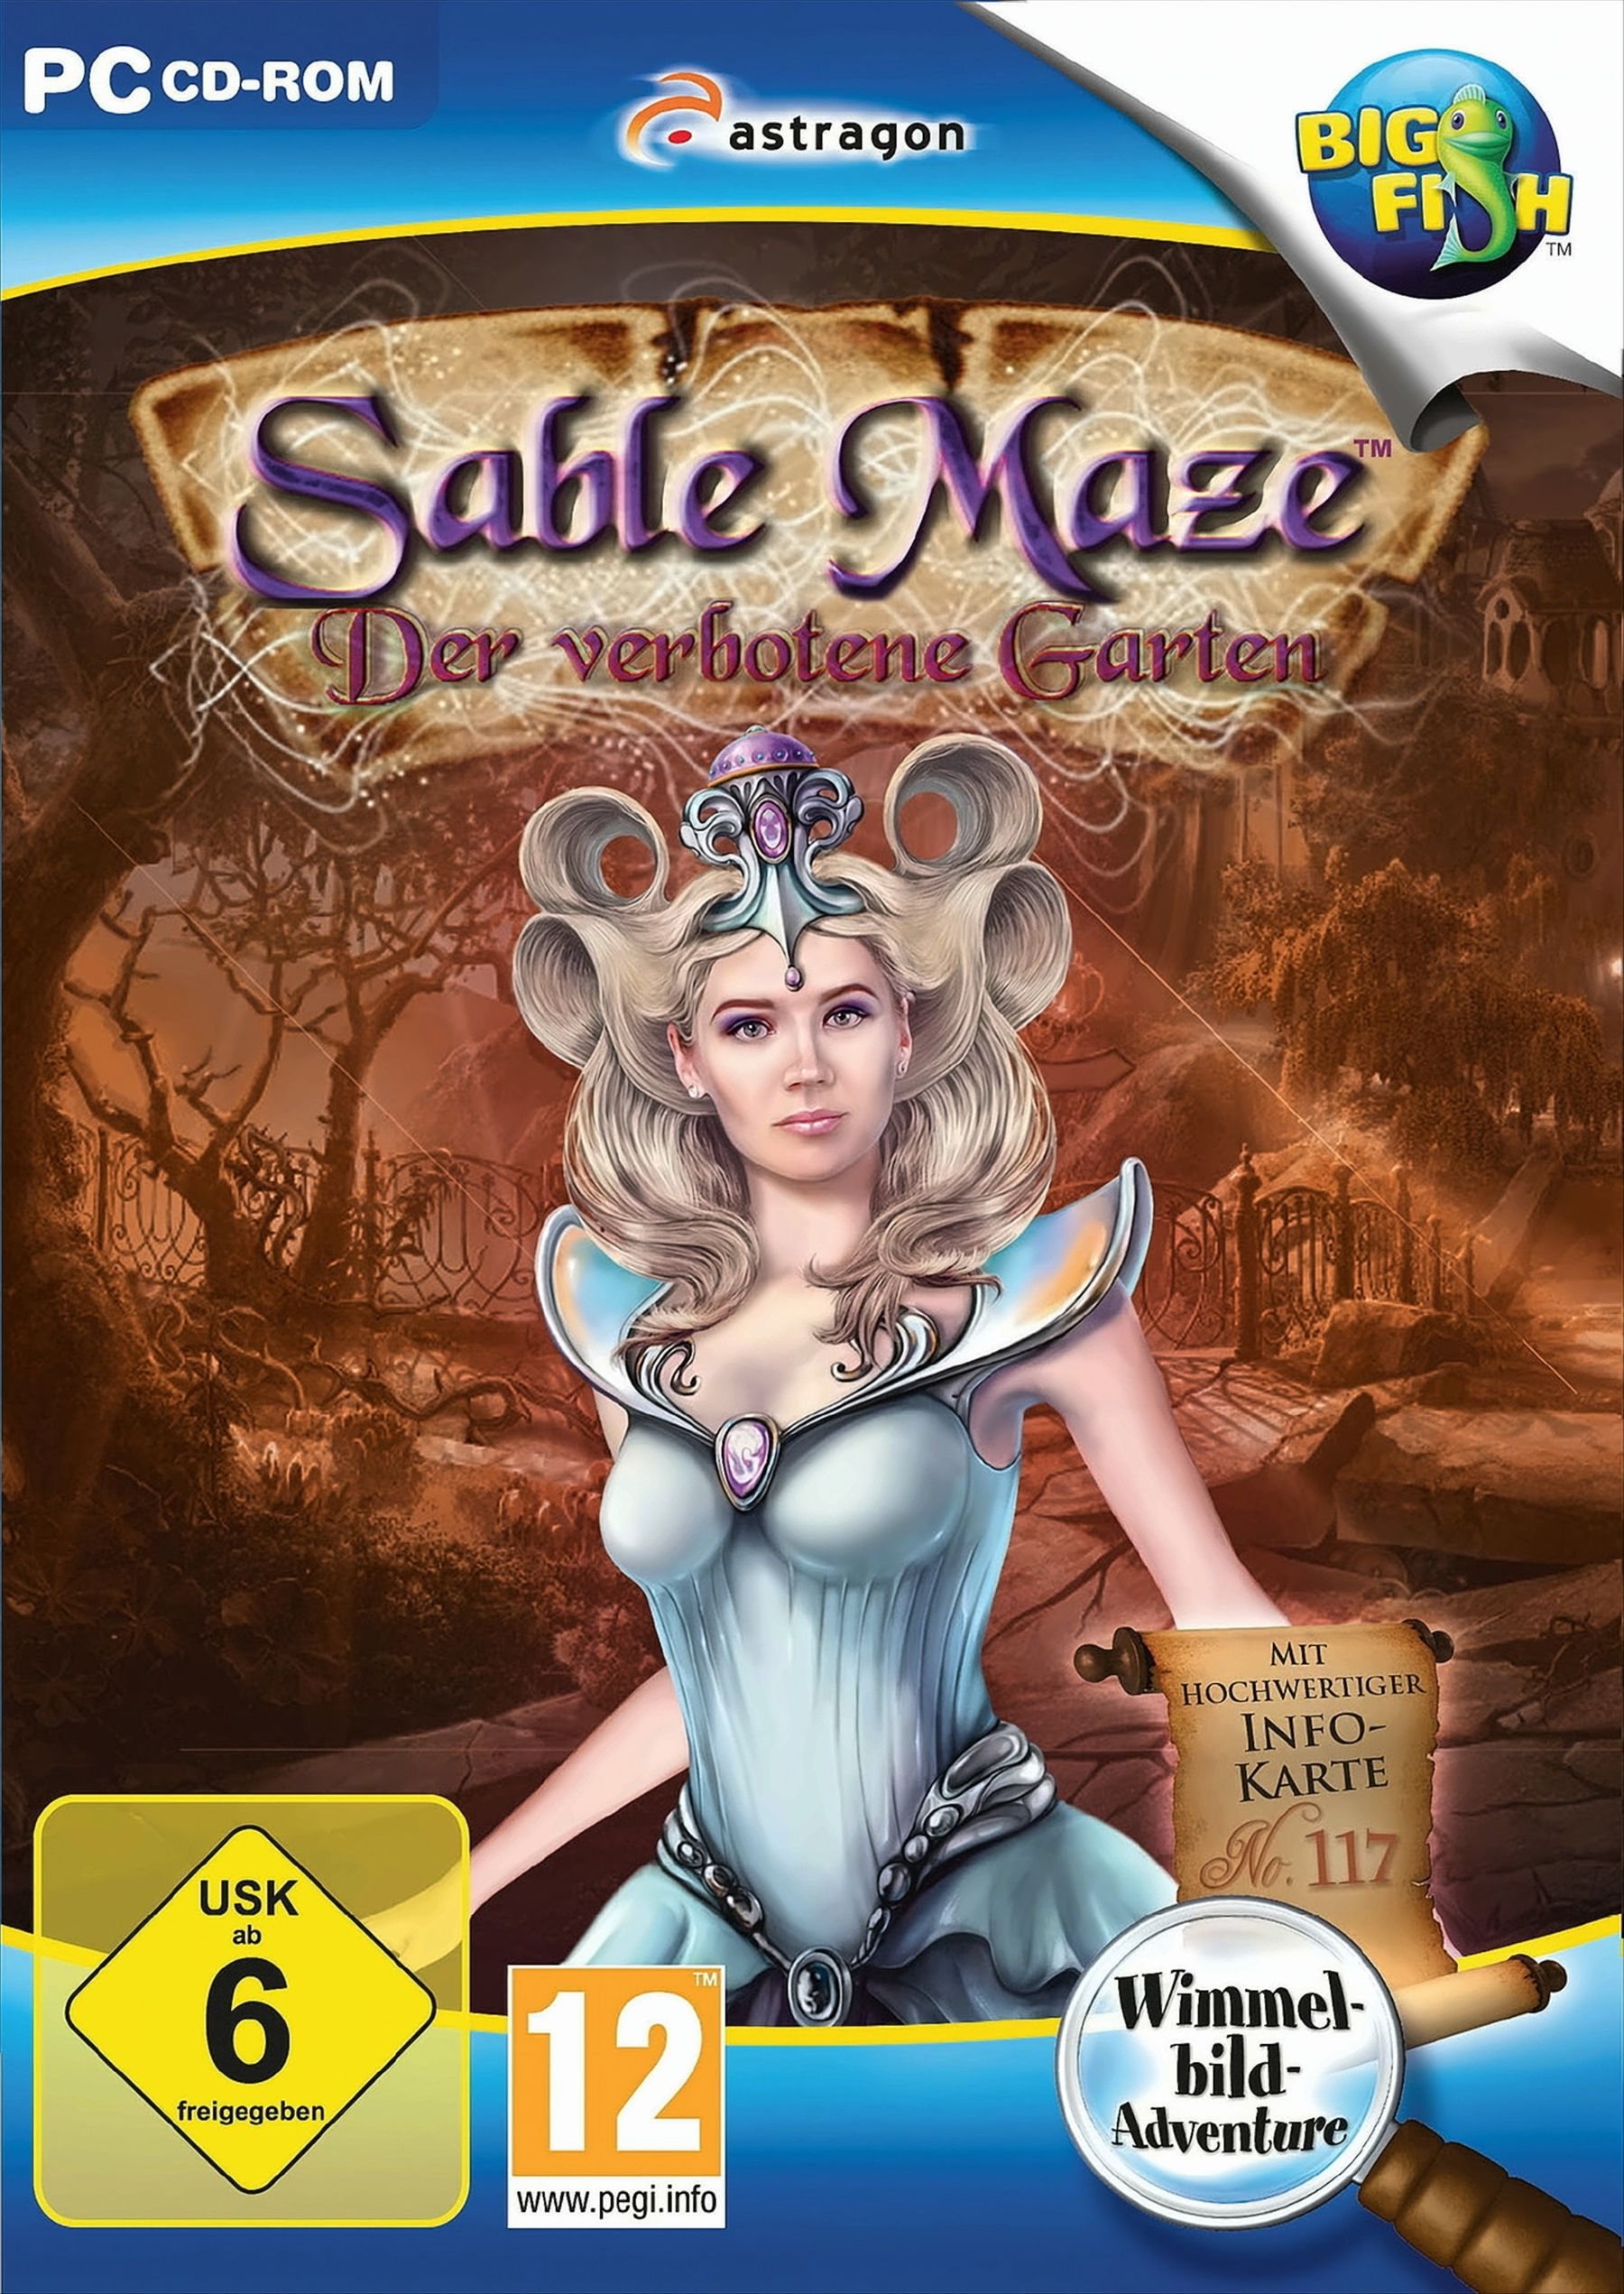 [PC] Maze: Sable - verbotene Der Garten